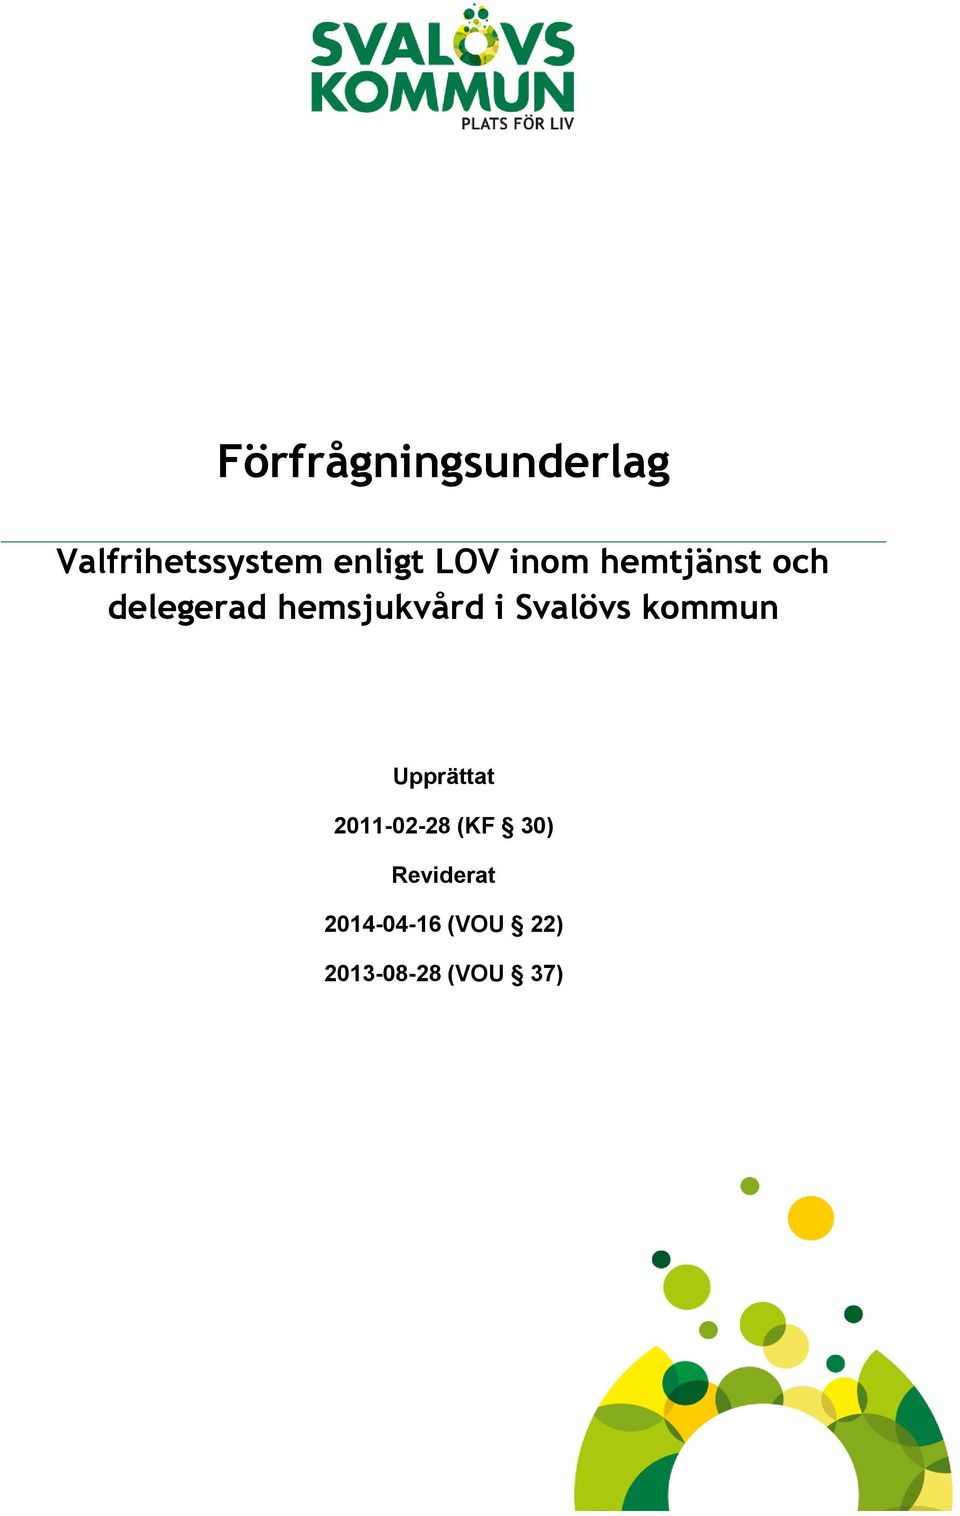 Svalövs kommun Upprättat 2011-02-28 (KF 30)